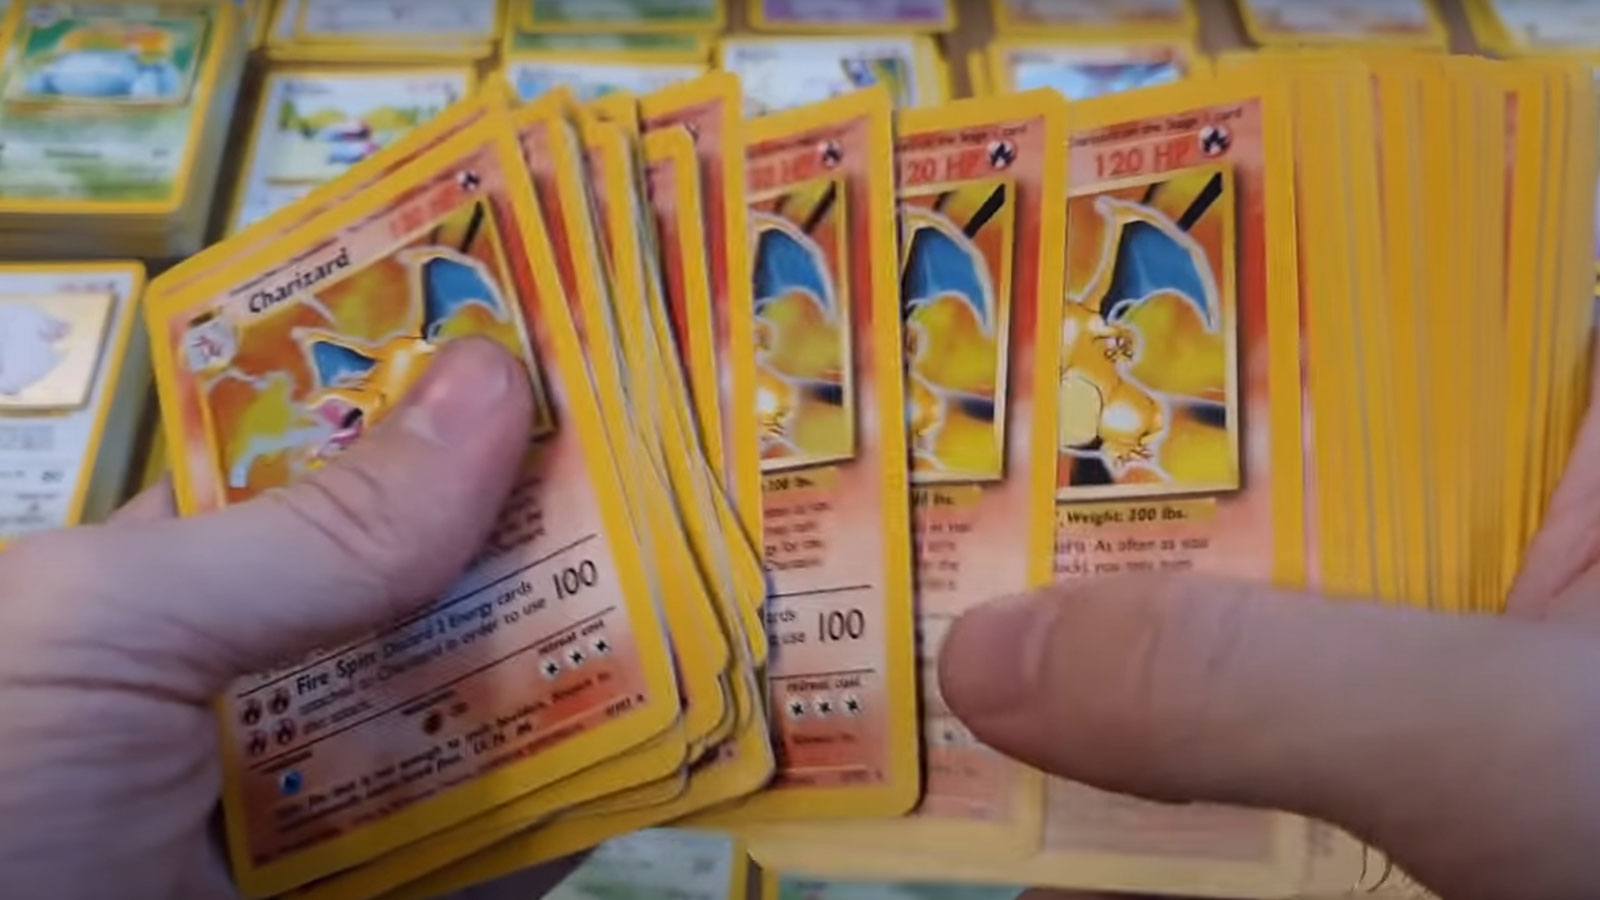 Une collection de cartes Pokémon valant plusieurs millions est apparue 